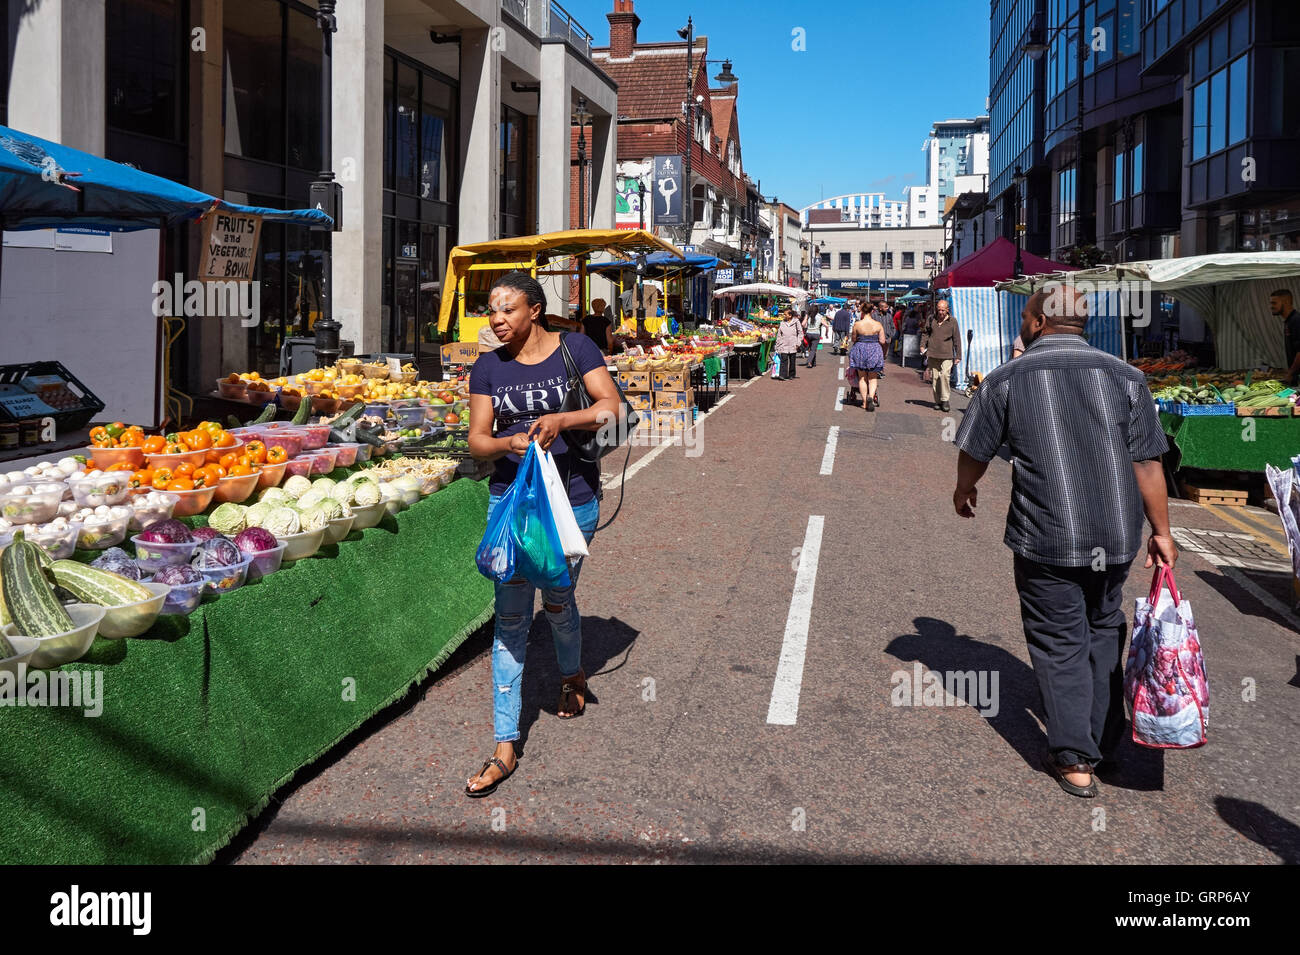 Surrey Street Market in Croydon, London England United Kingdom UK Stock Photo